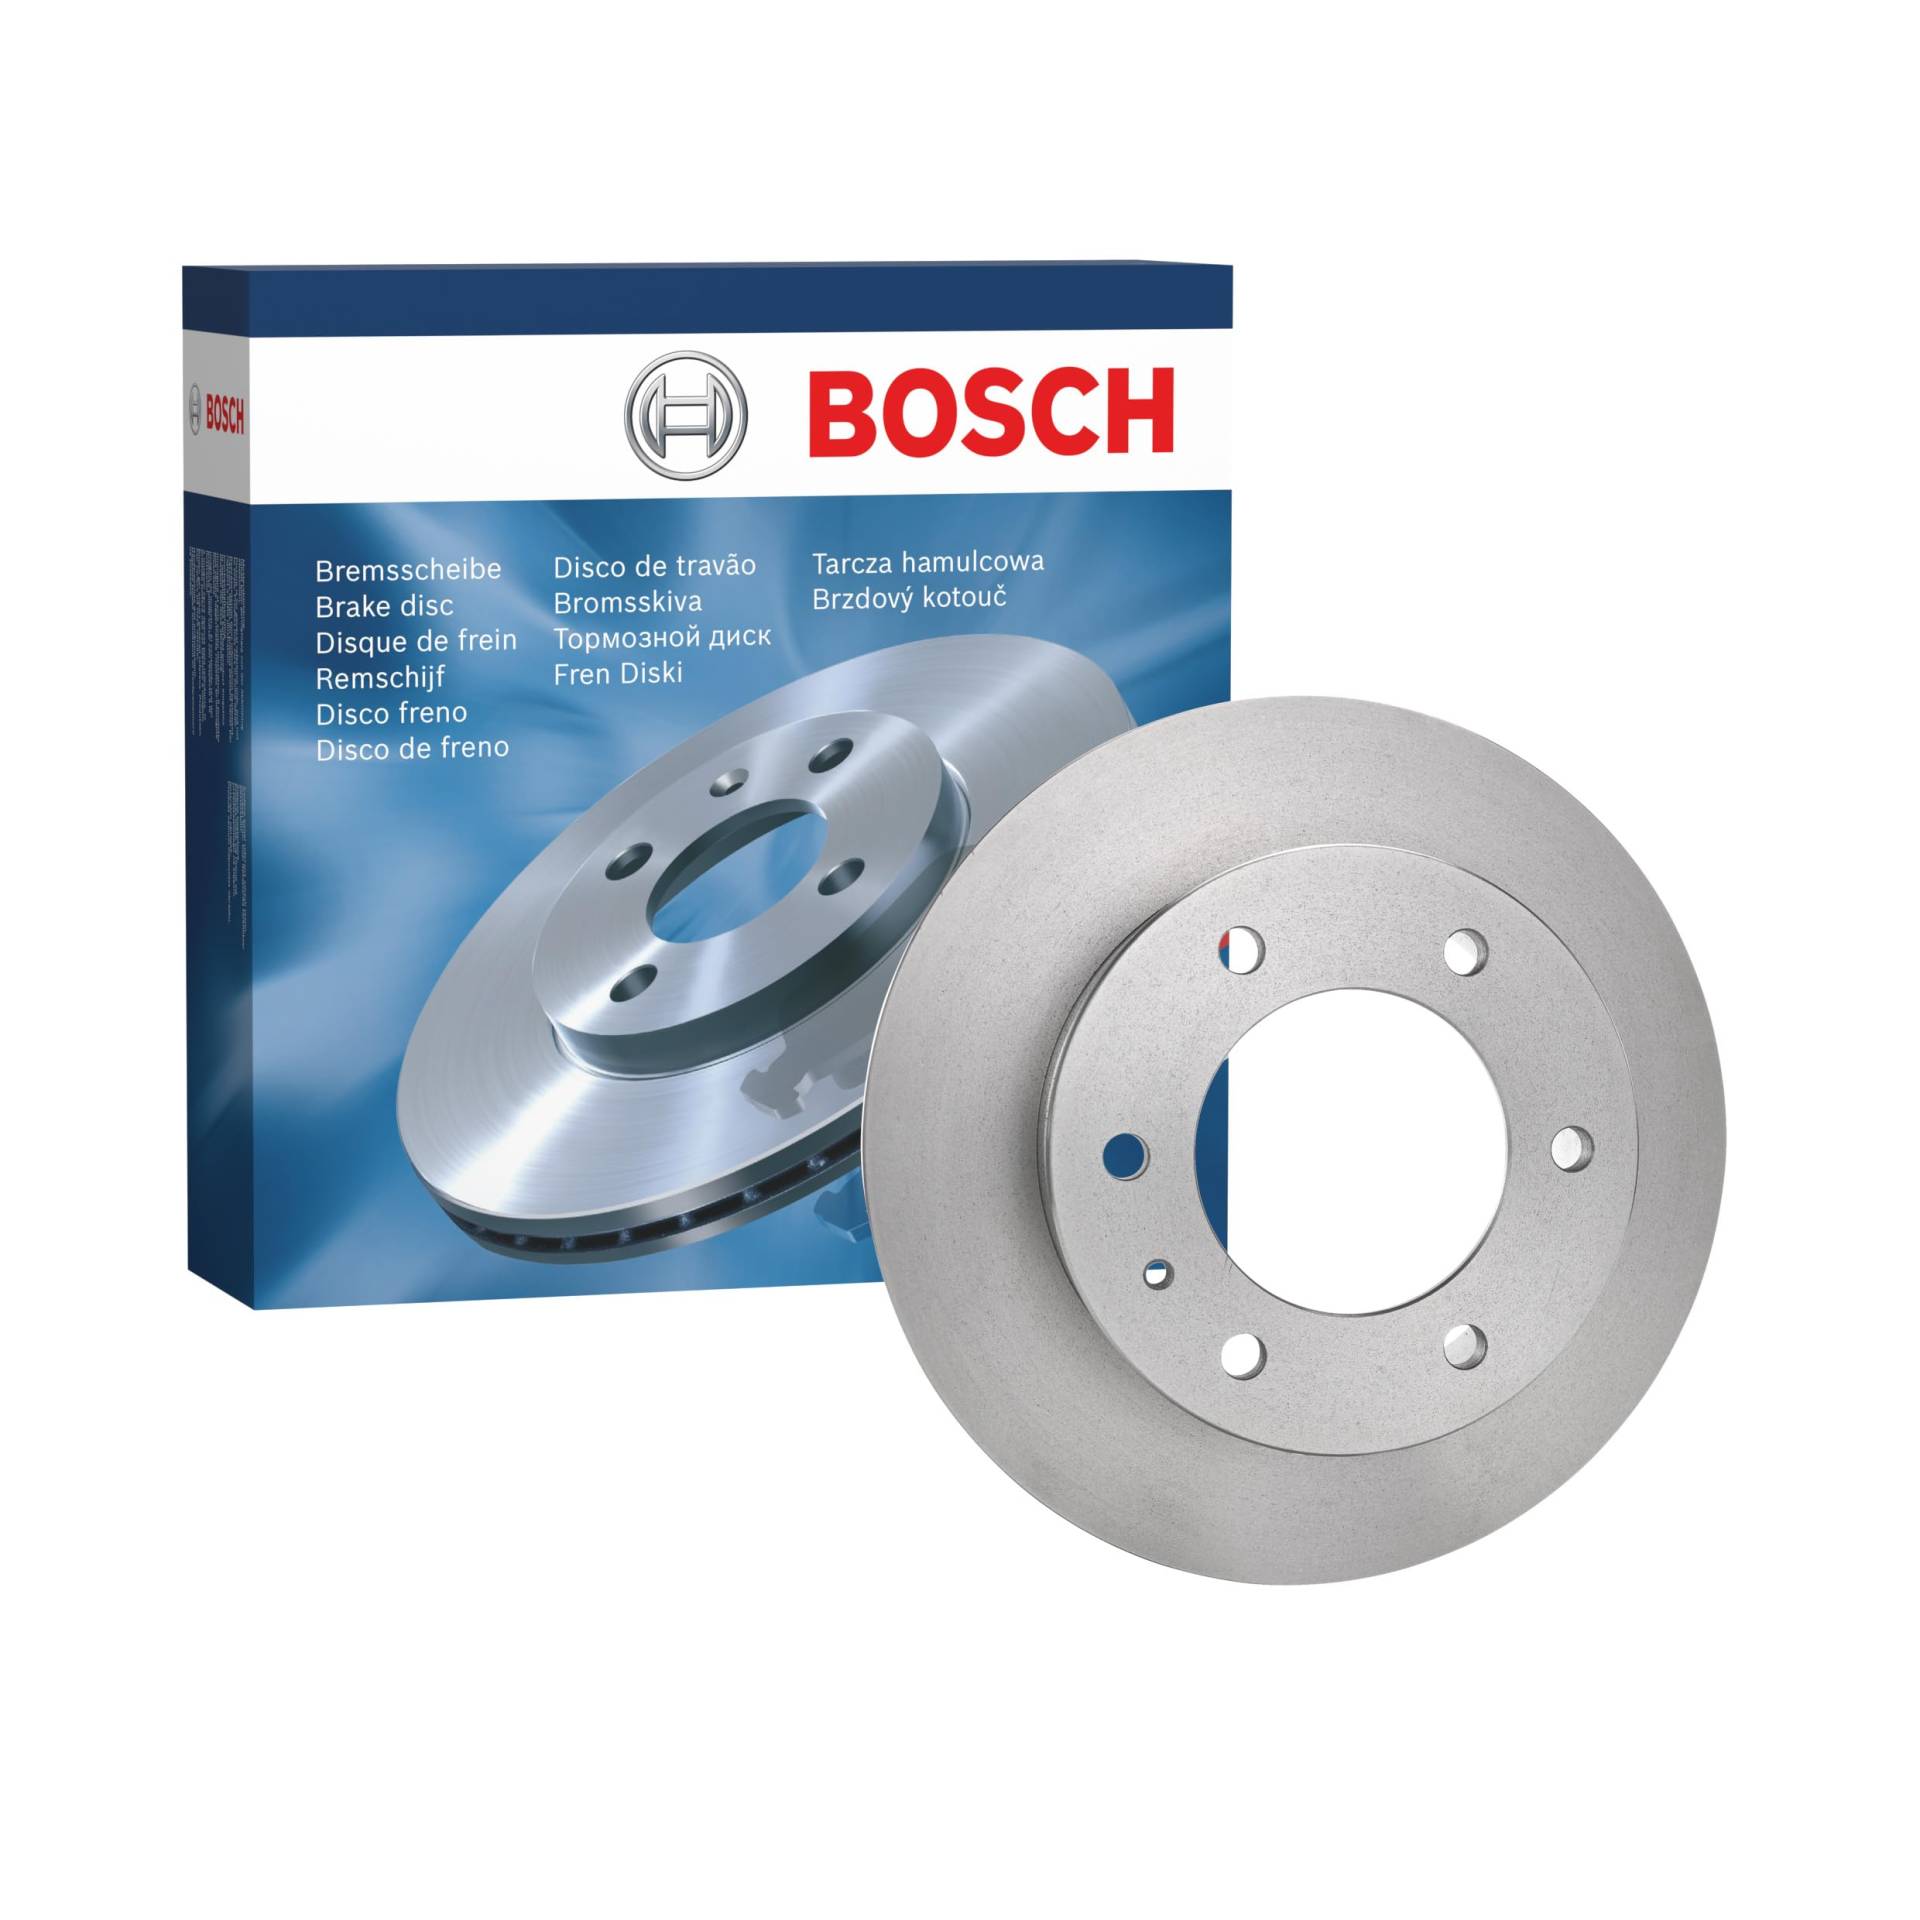 Bosch BD1862 Bremsscheiben - Vorderachse - ECE-R90 Zertifizierung - eine Bremsscheibe von Bosch Automotive